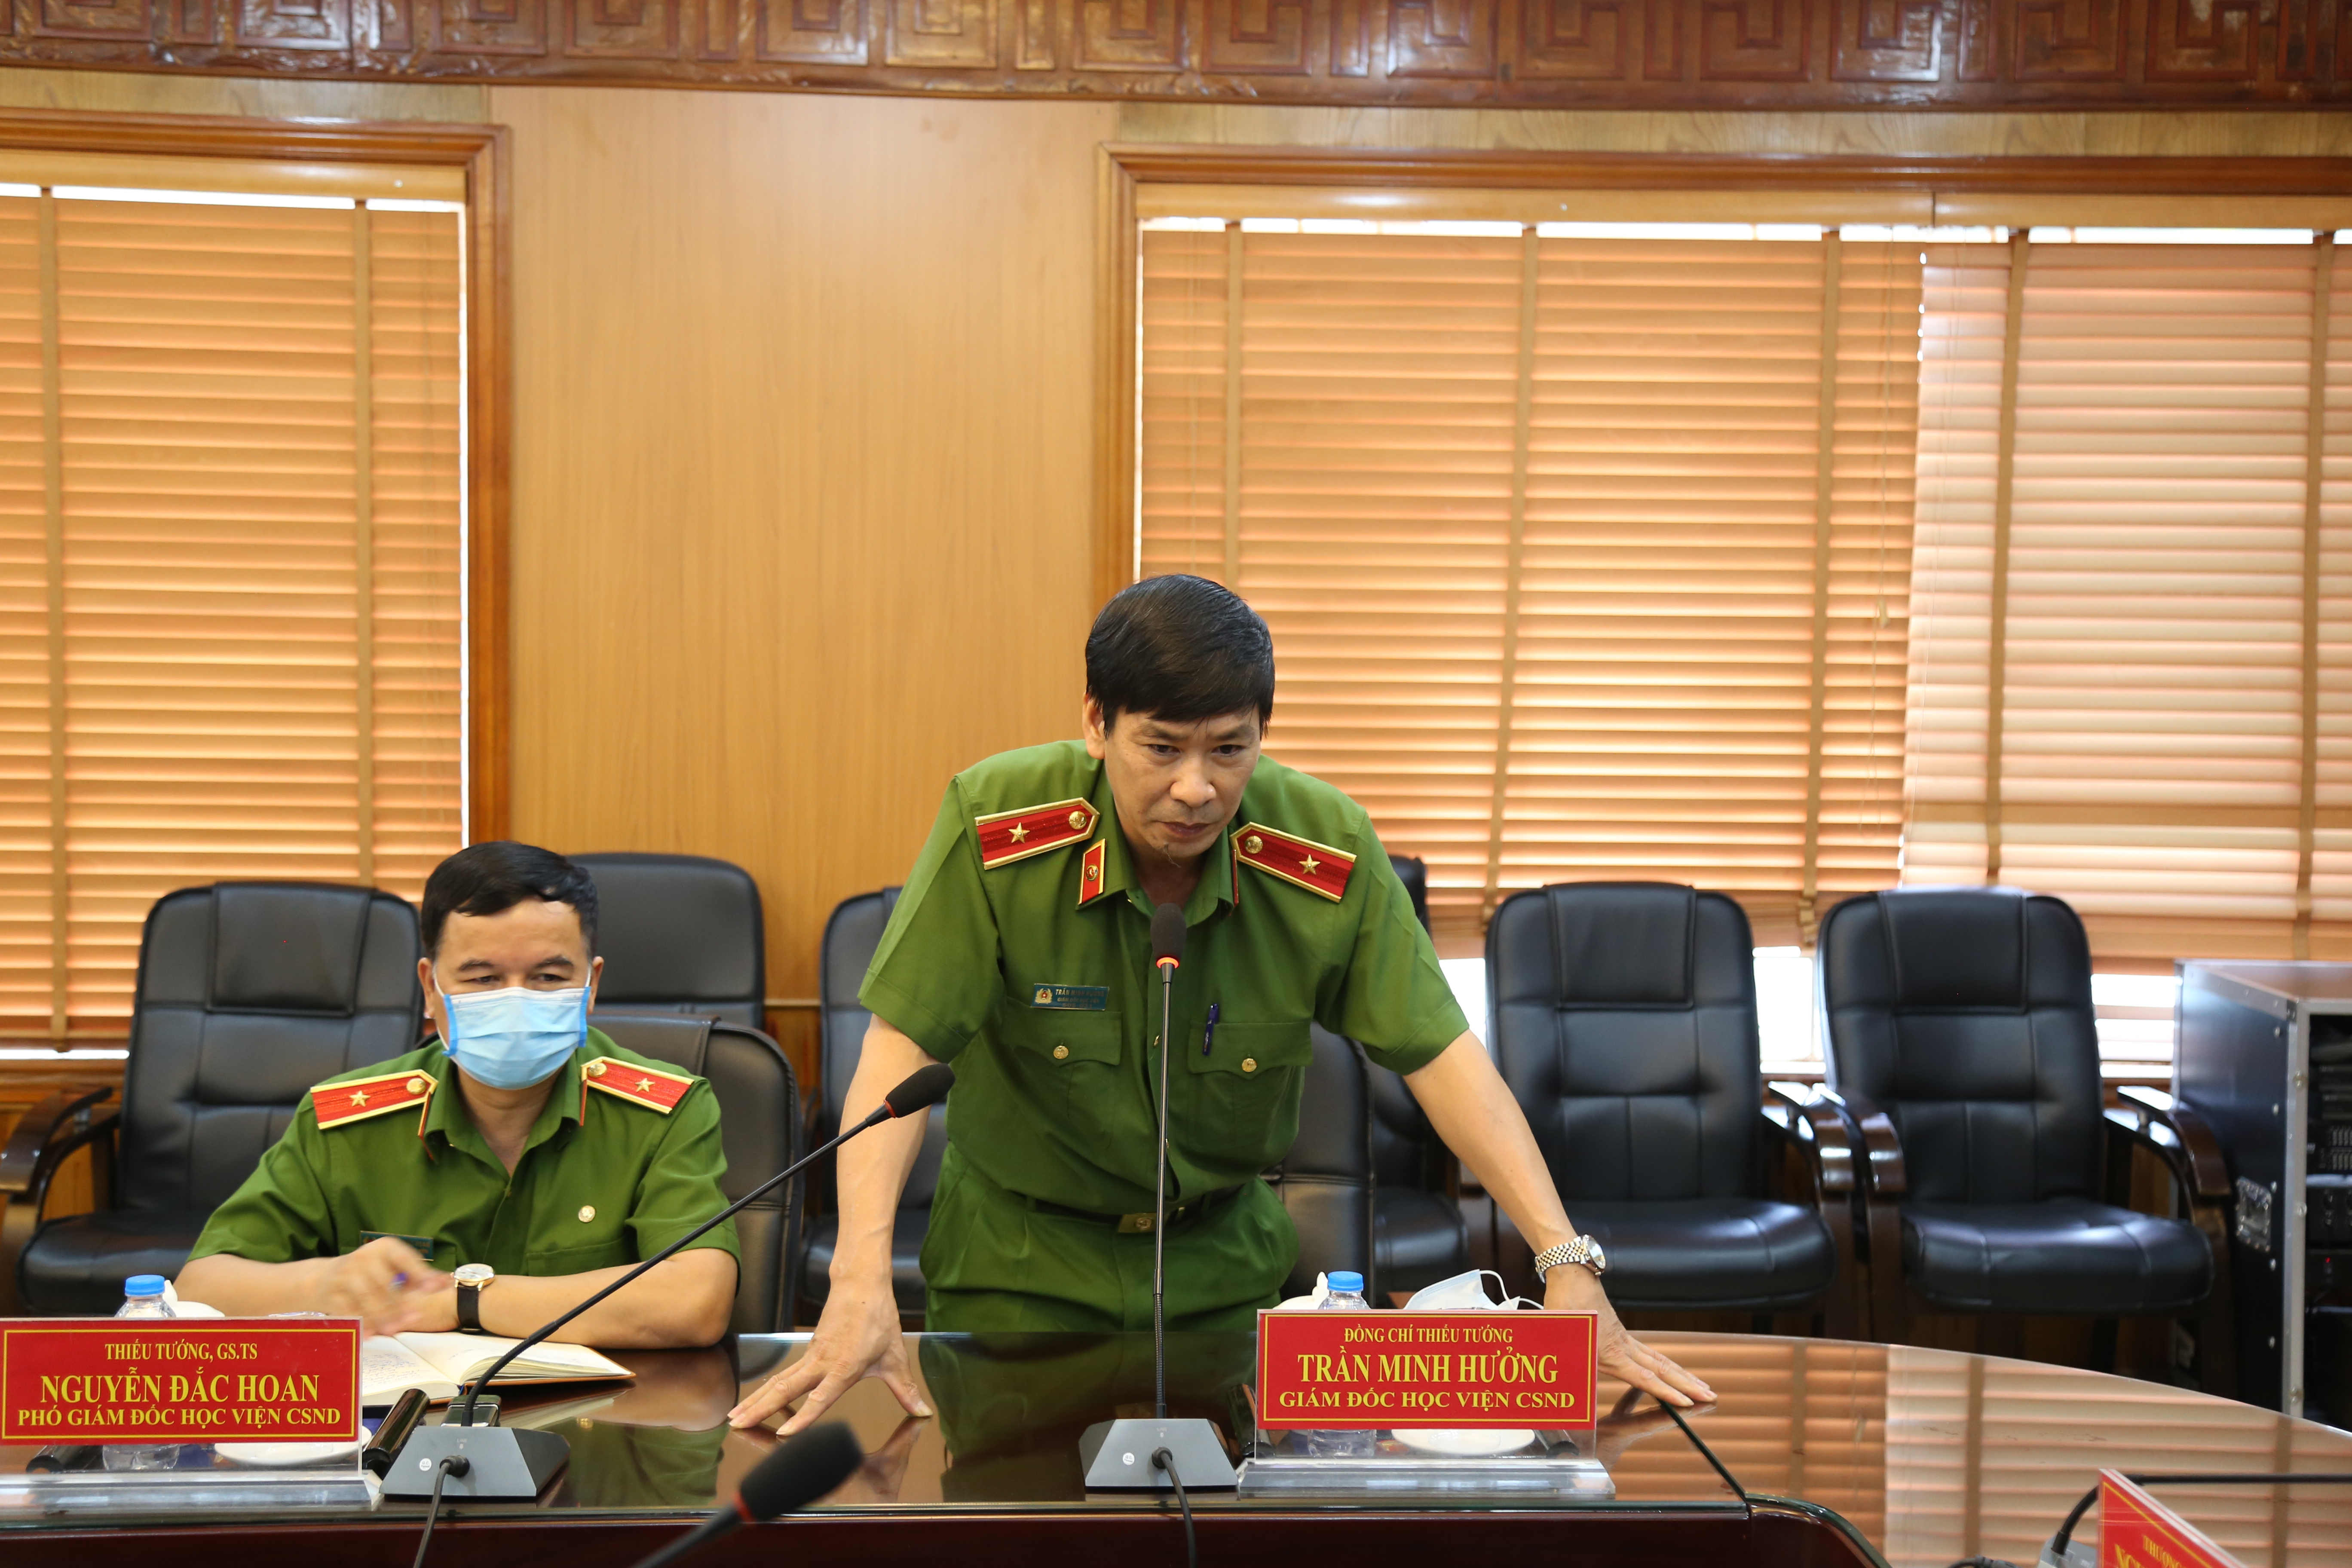 Thiếu tướng, GS.TS Trần Minh Hưởng, Giám đốc Học viện phát biểu tại buổi làm việc